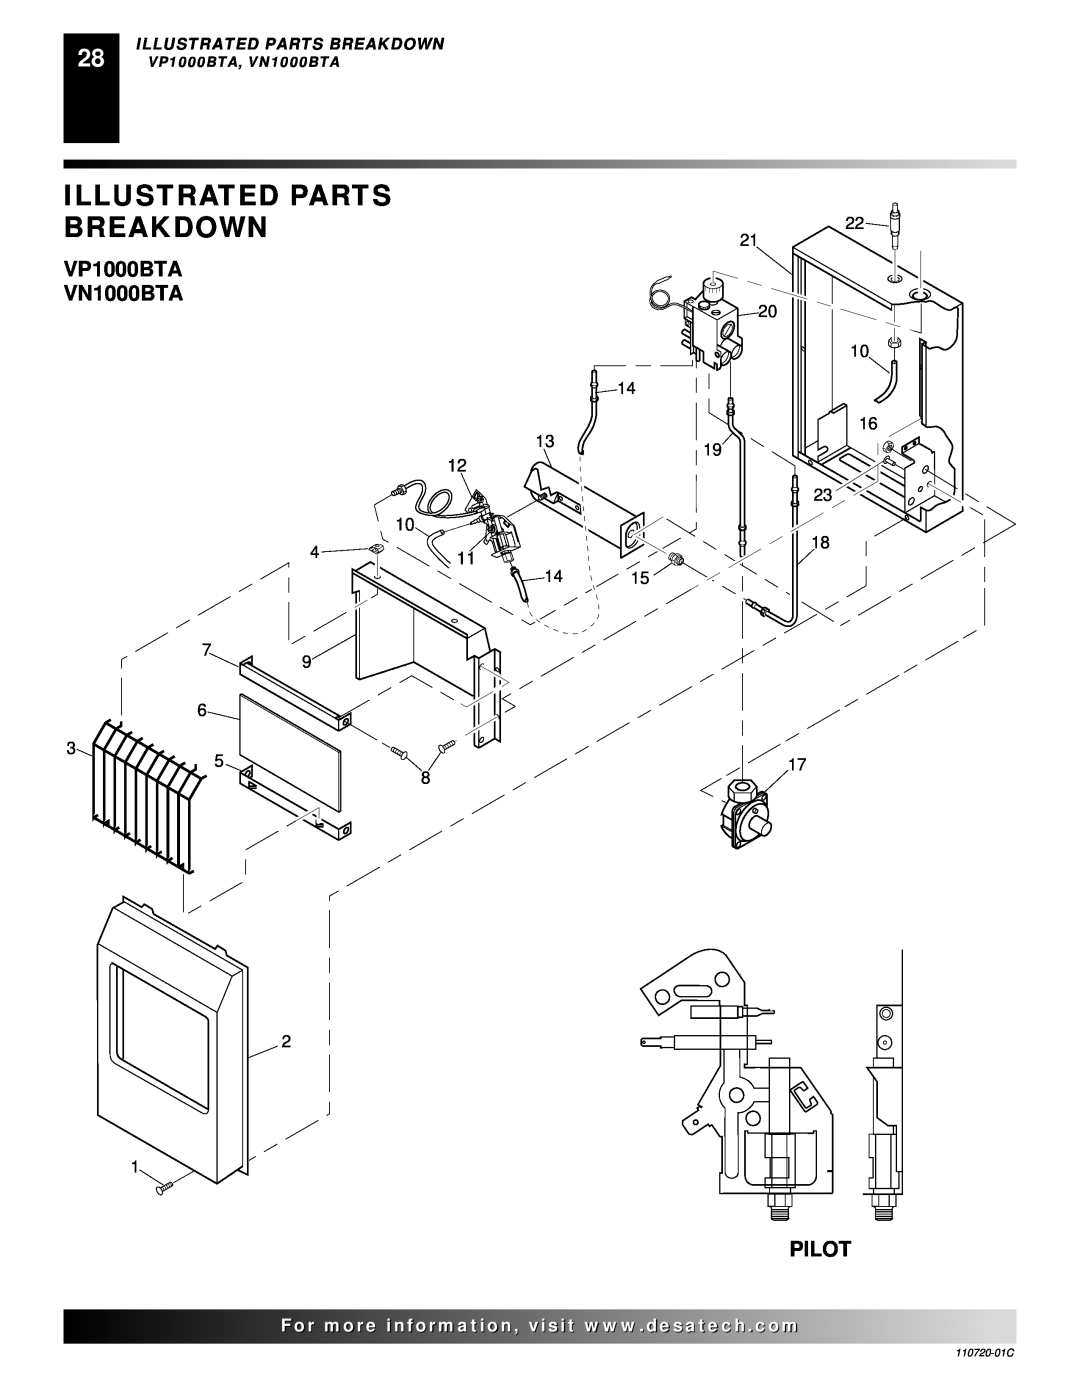 Desa VN10A installation manual VP1000BTA VN1000BTA, Illustrated Parts Breakdown, Pilot, VP1000BTA, VN1000BTA 